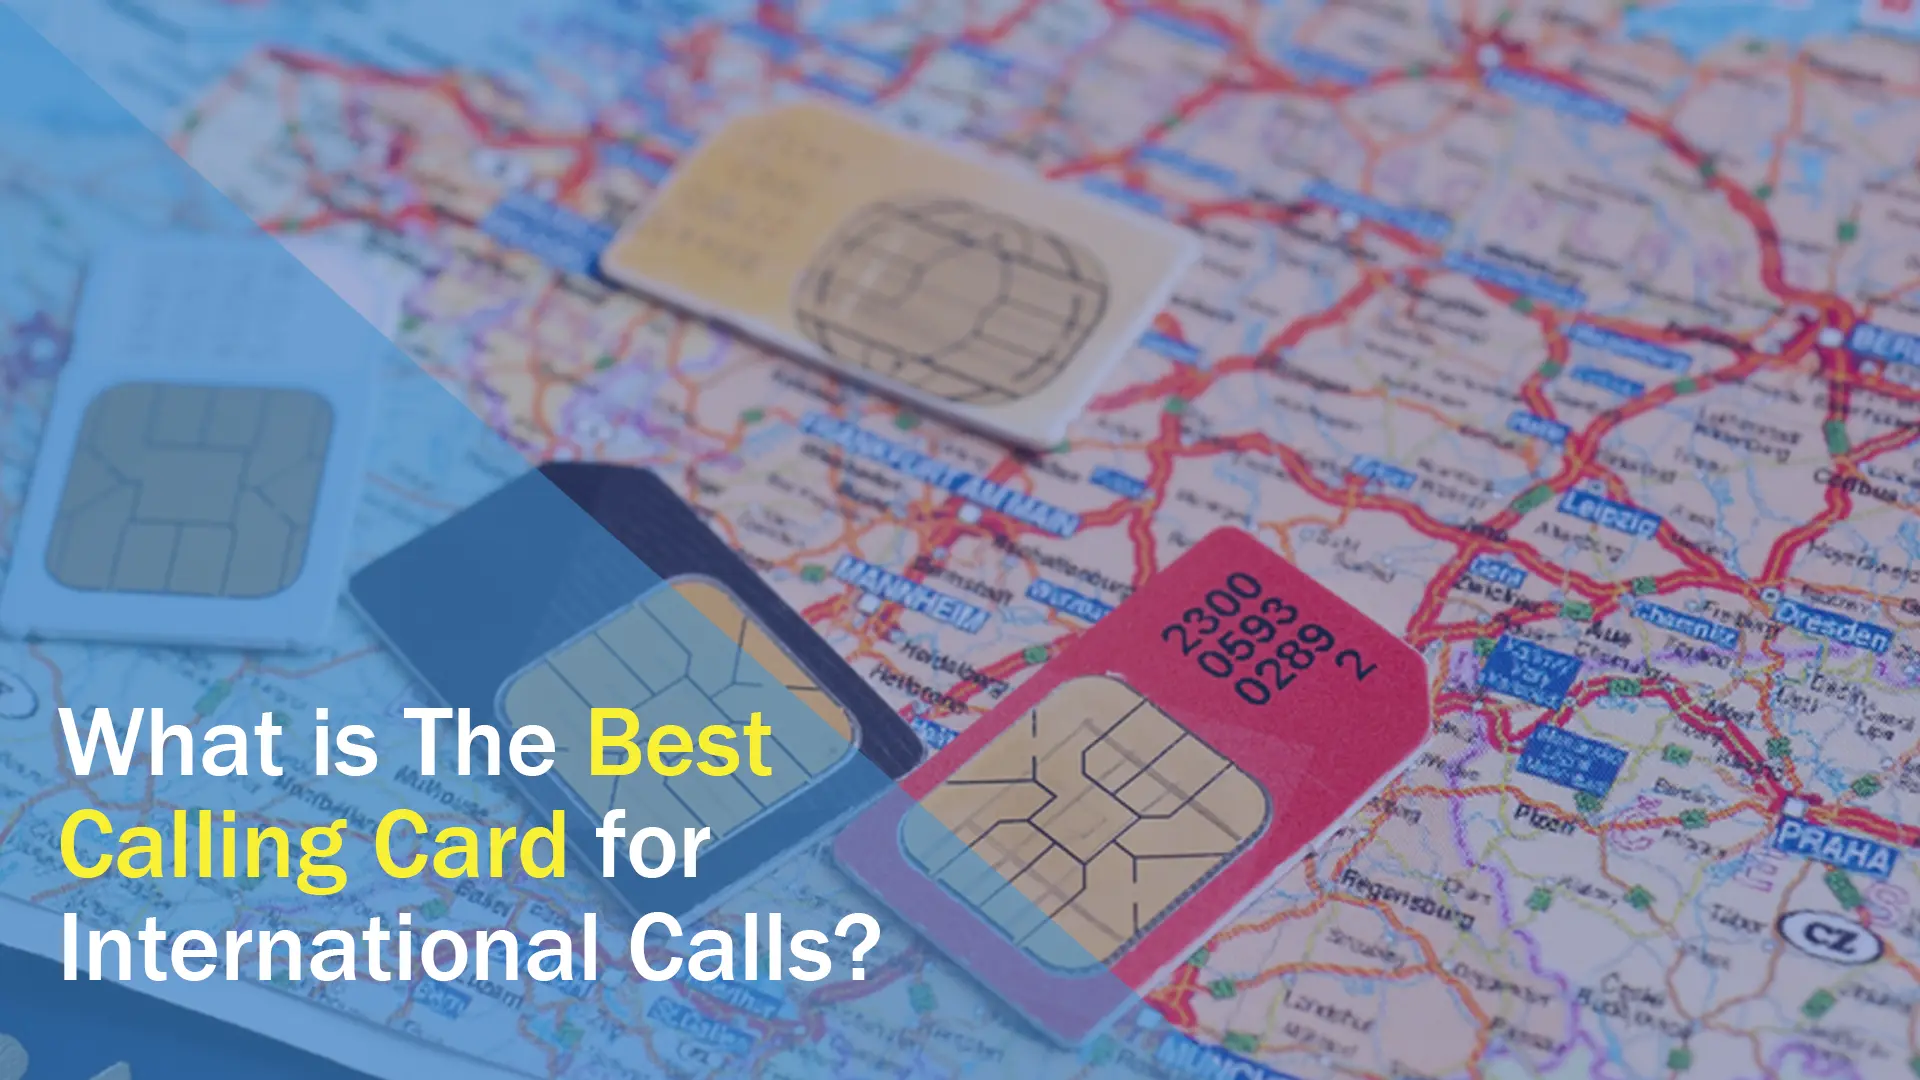 Quelle est la meilleure carte d'appel pour les appels internationaux ?, Appels internationaux